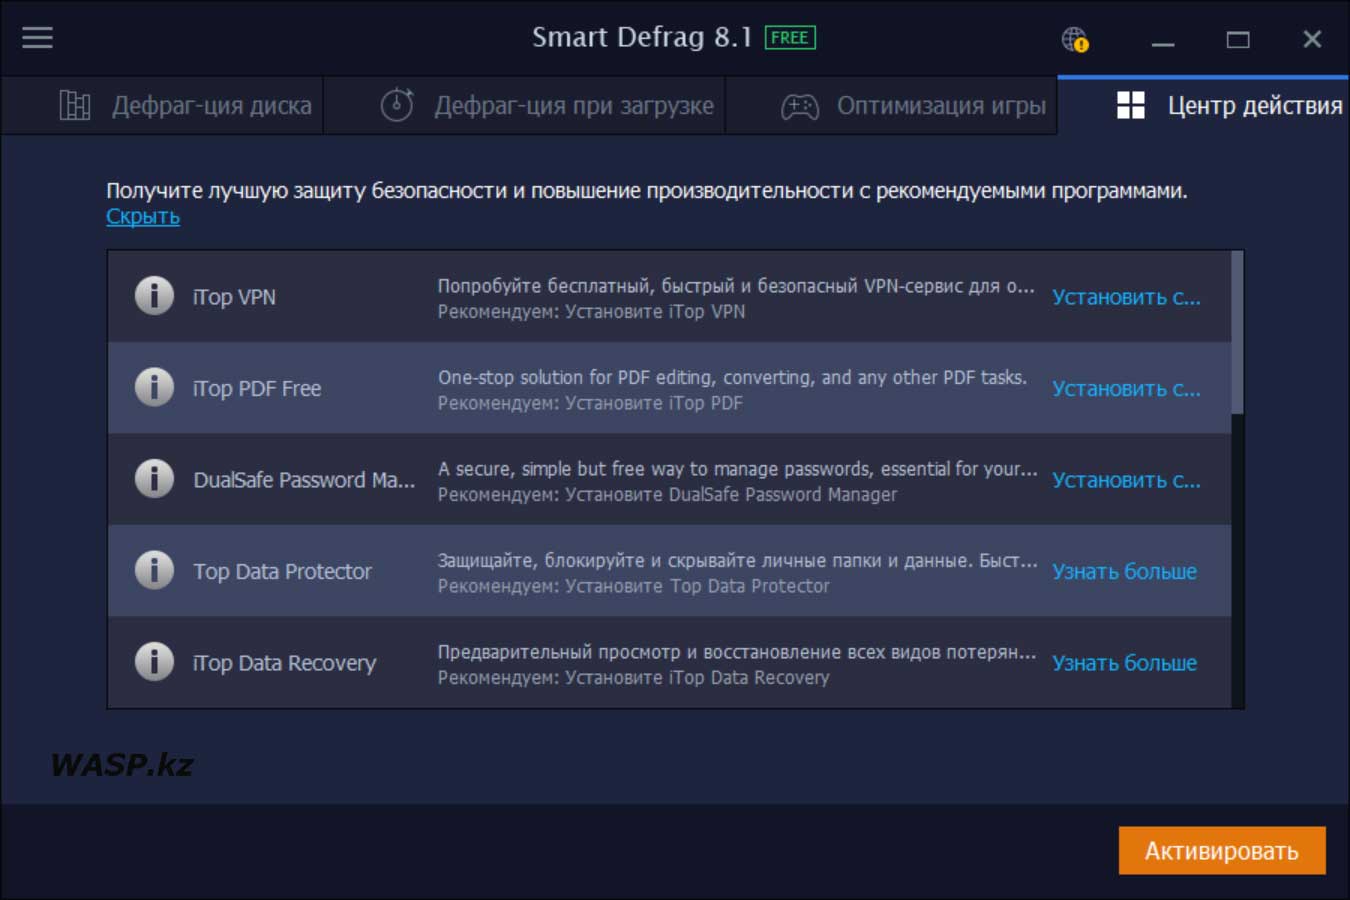 IObit Smart Defrag 8.1.0.159 раздел Центр действия что здесь нужного